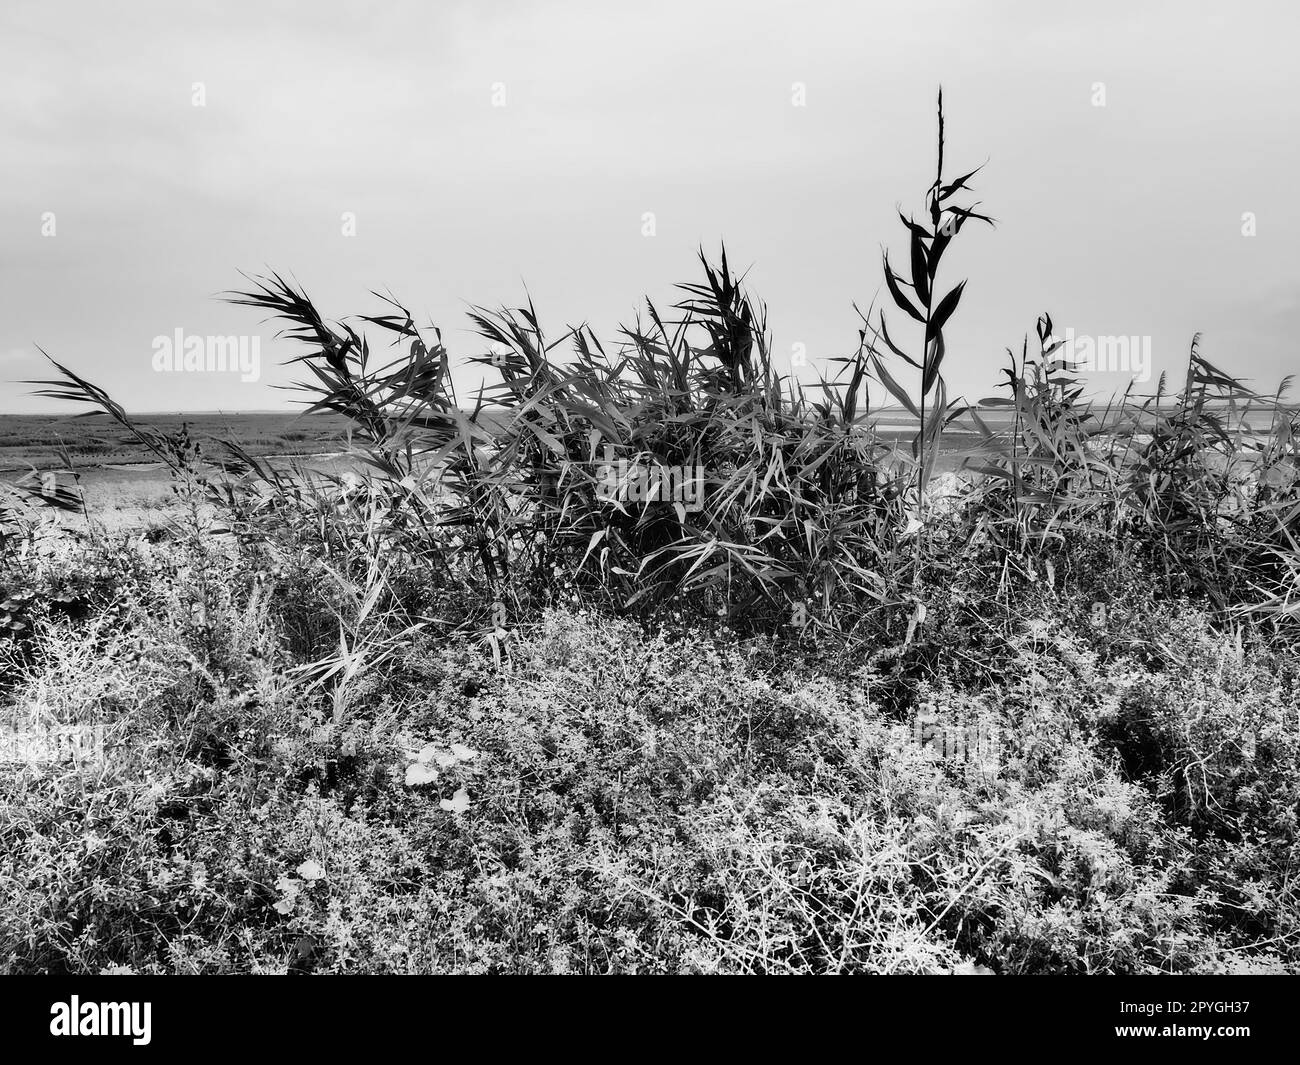 Rotschildkröte, oder Südschildkröte, Phragmites australis, ein hohes mehrjähriges Gras der Gattung Reed. Flora der Mündung. Schwarzweiß-Monochrom. Böden mit nahe stehendem Grundwasser. Stürmisches Wetter. Stockfoto